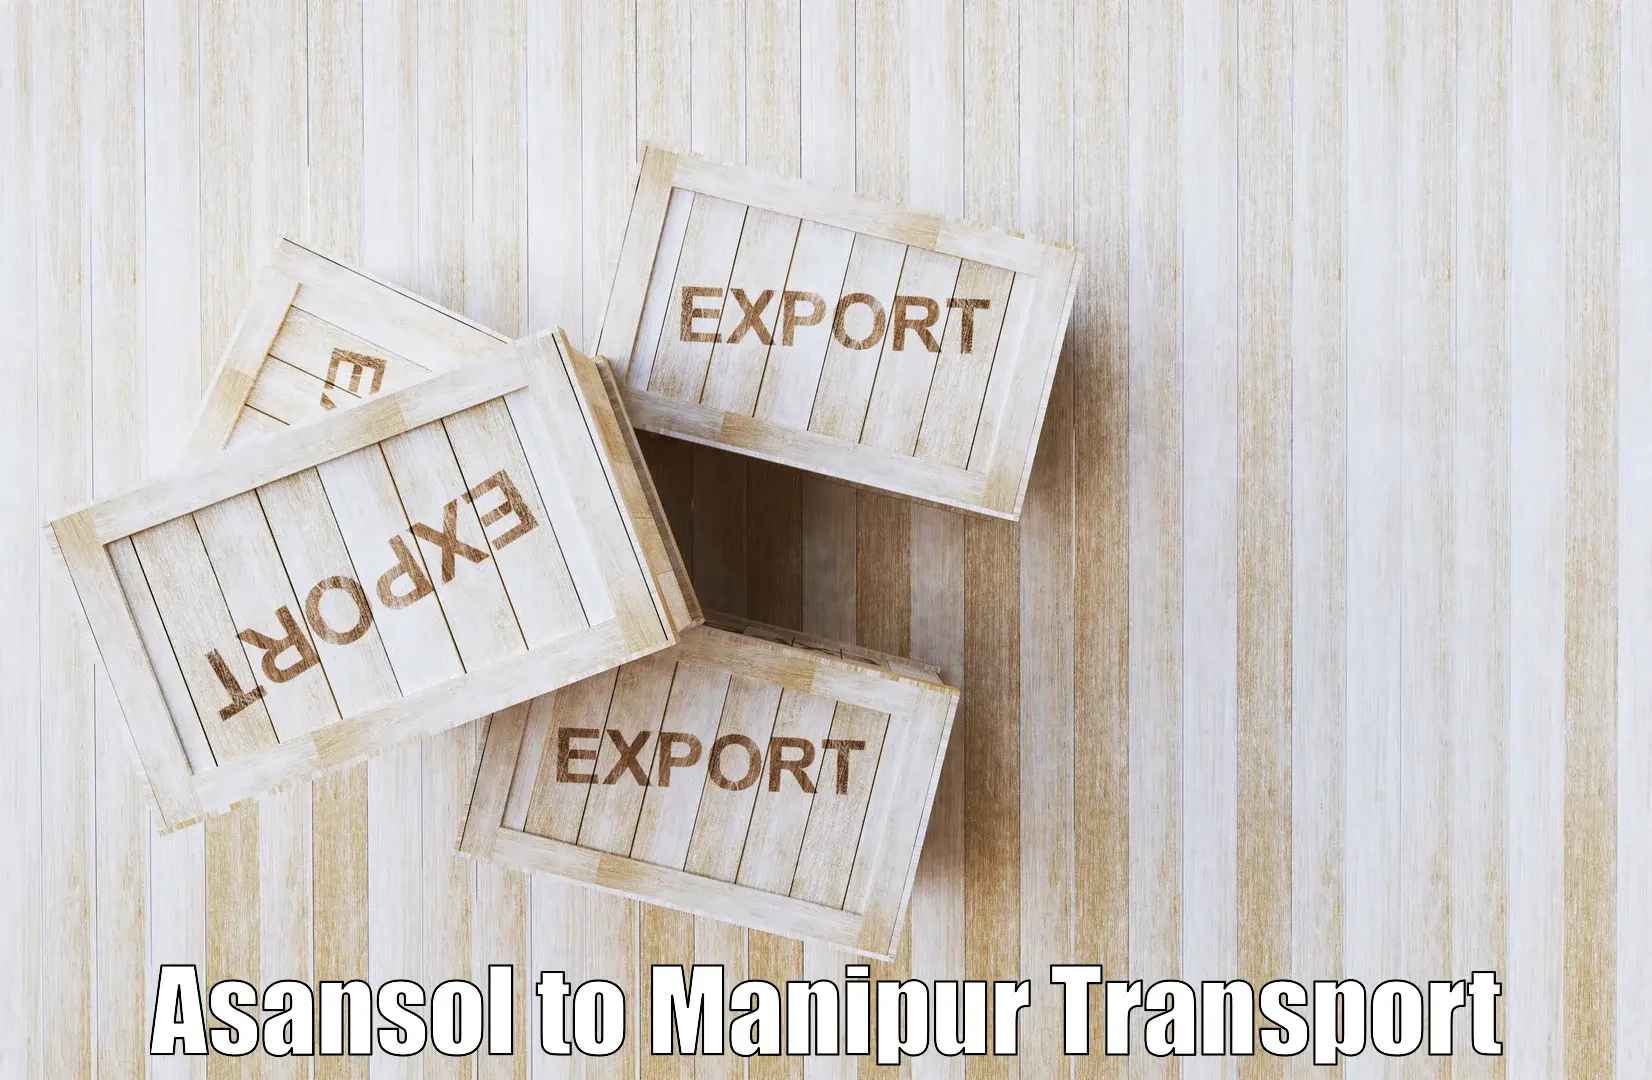 Furniture transport service Asansol to NIT Manipur